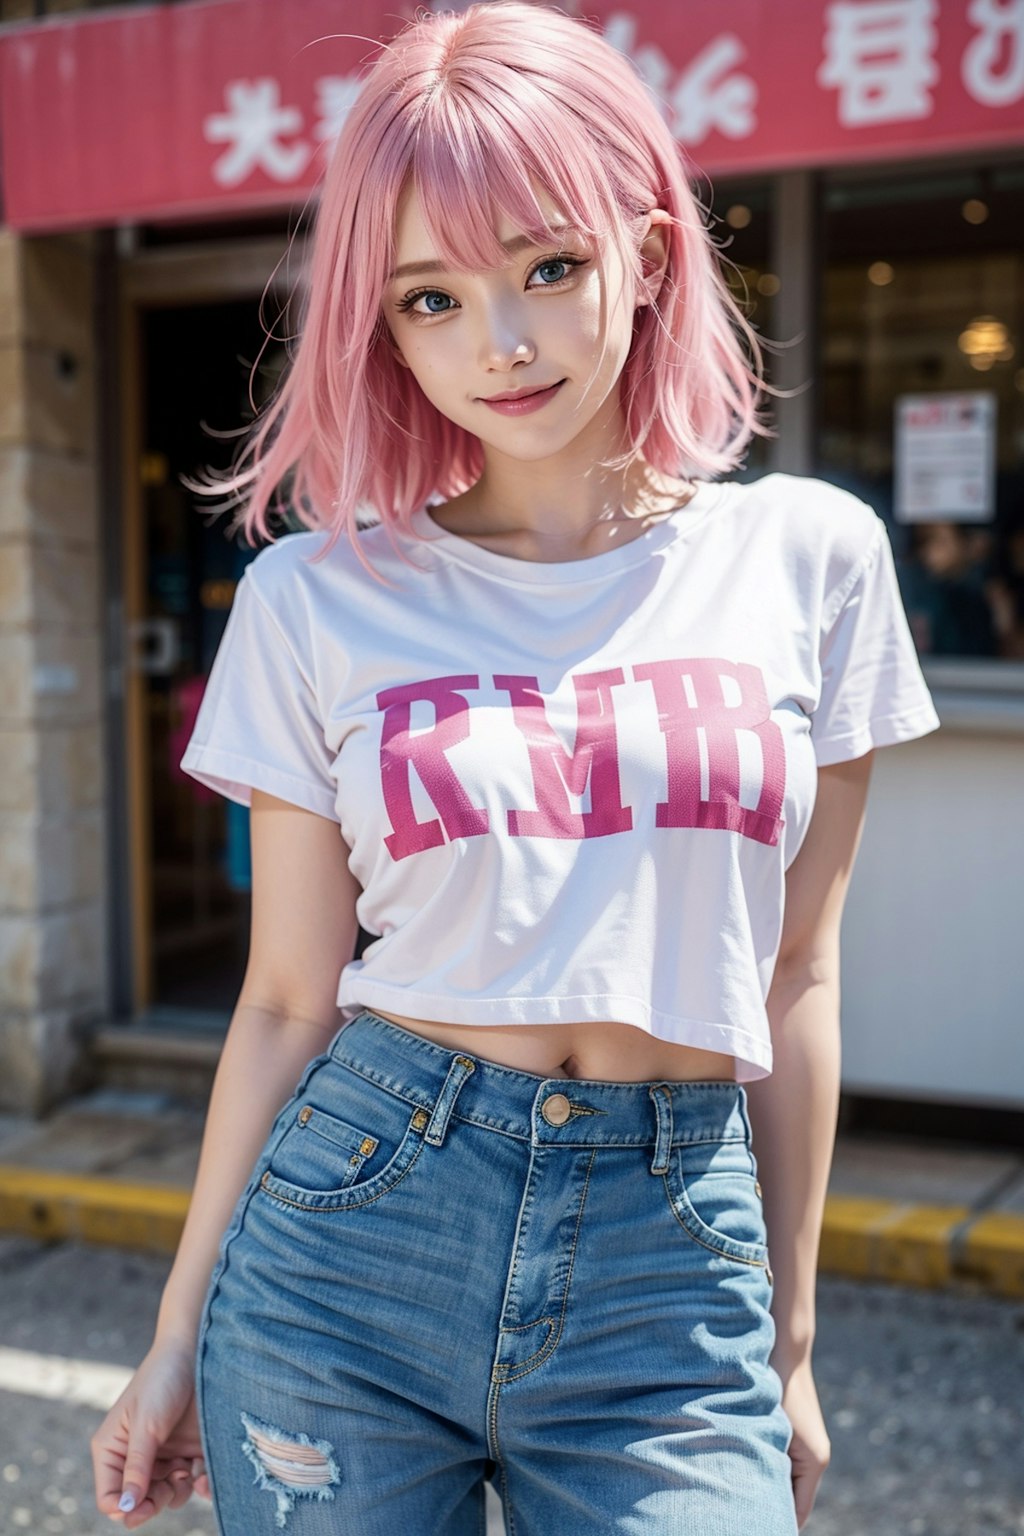 ピンク髪【企画】